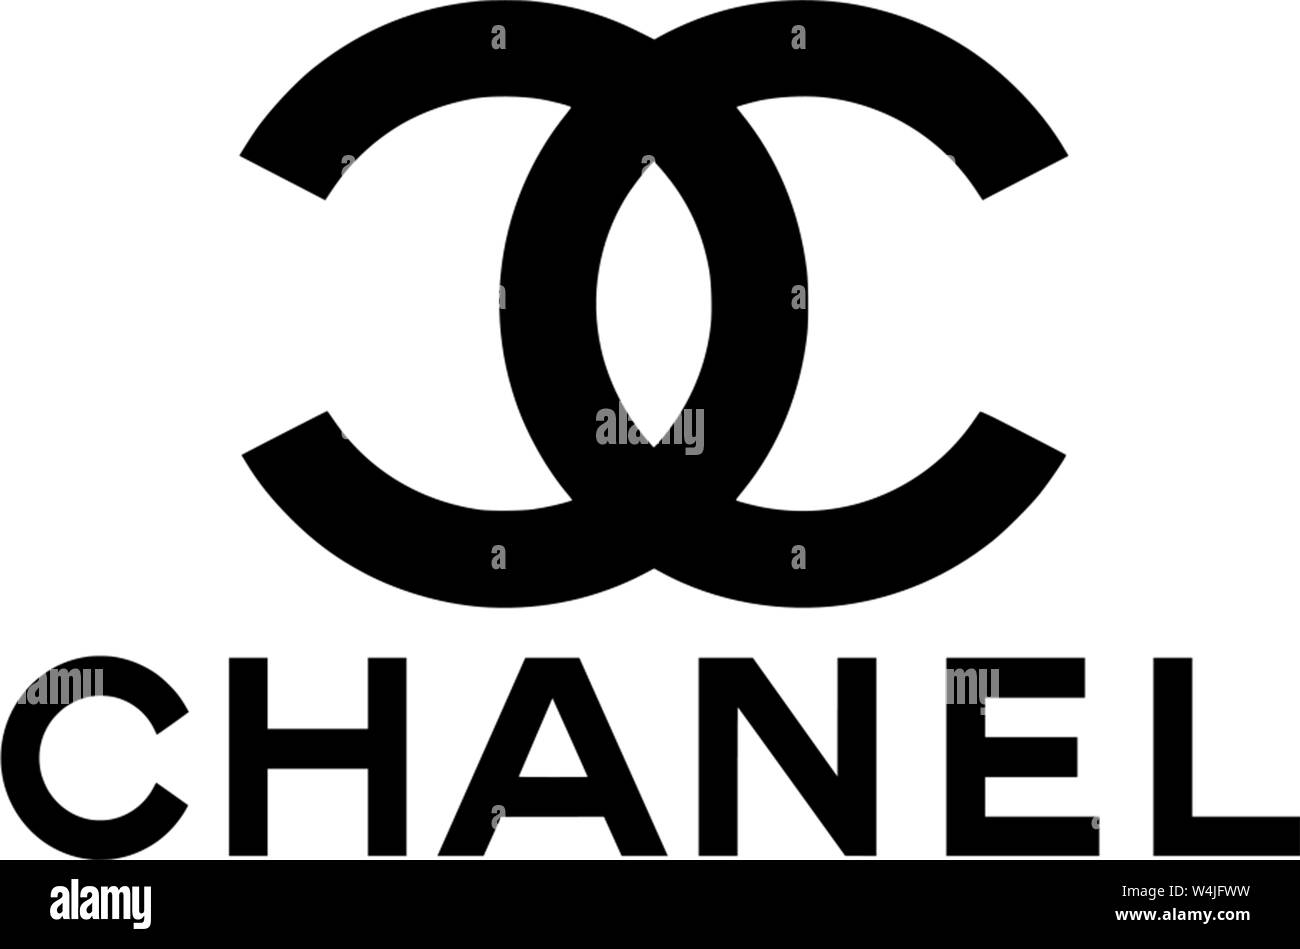 Logotipo, Chanel, marca de moda, la empresa de moda, lujo, moda exentos,  fondo blanco, Alemania Fotografía de stock - Alamy